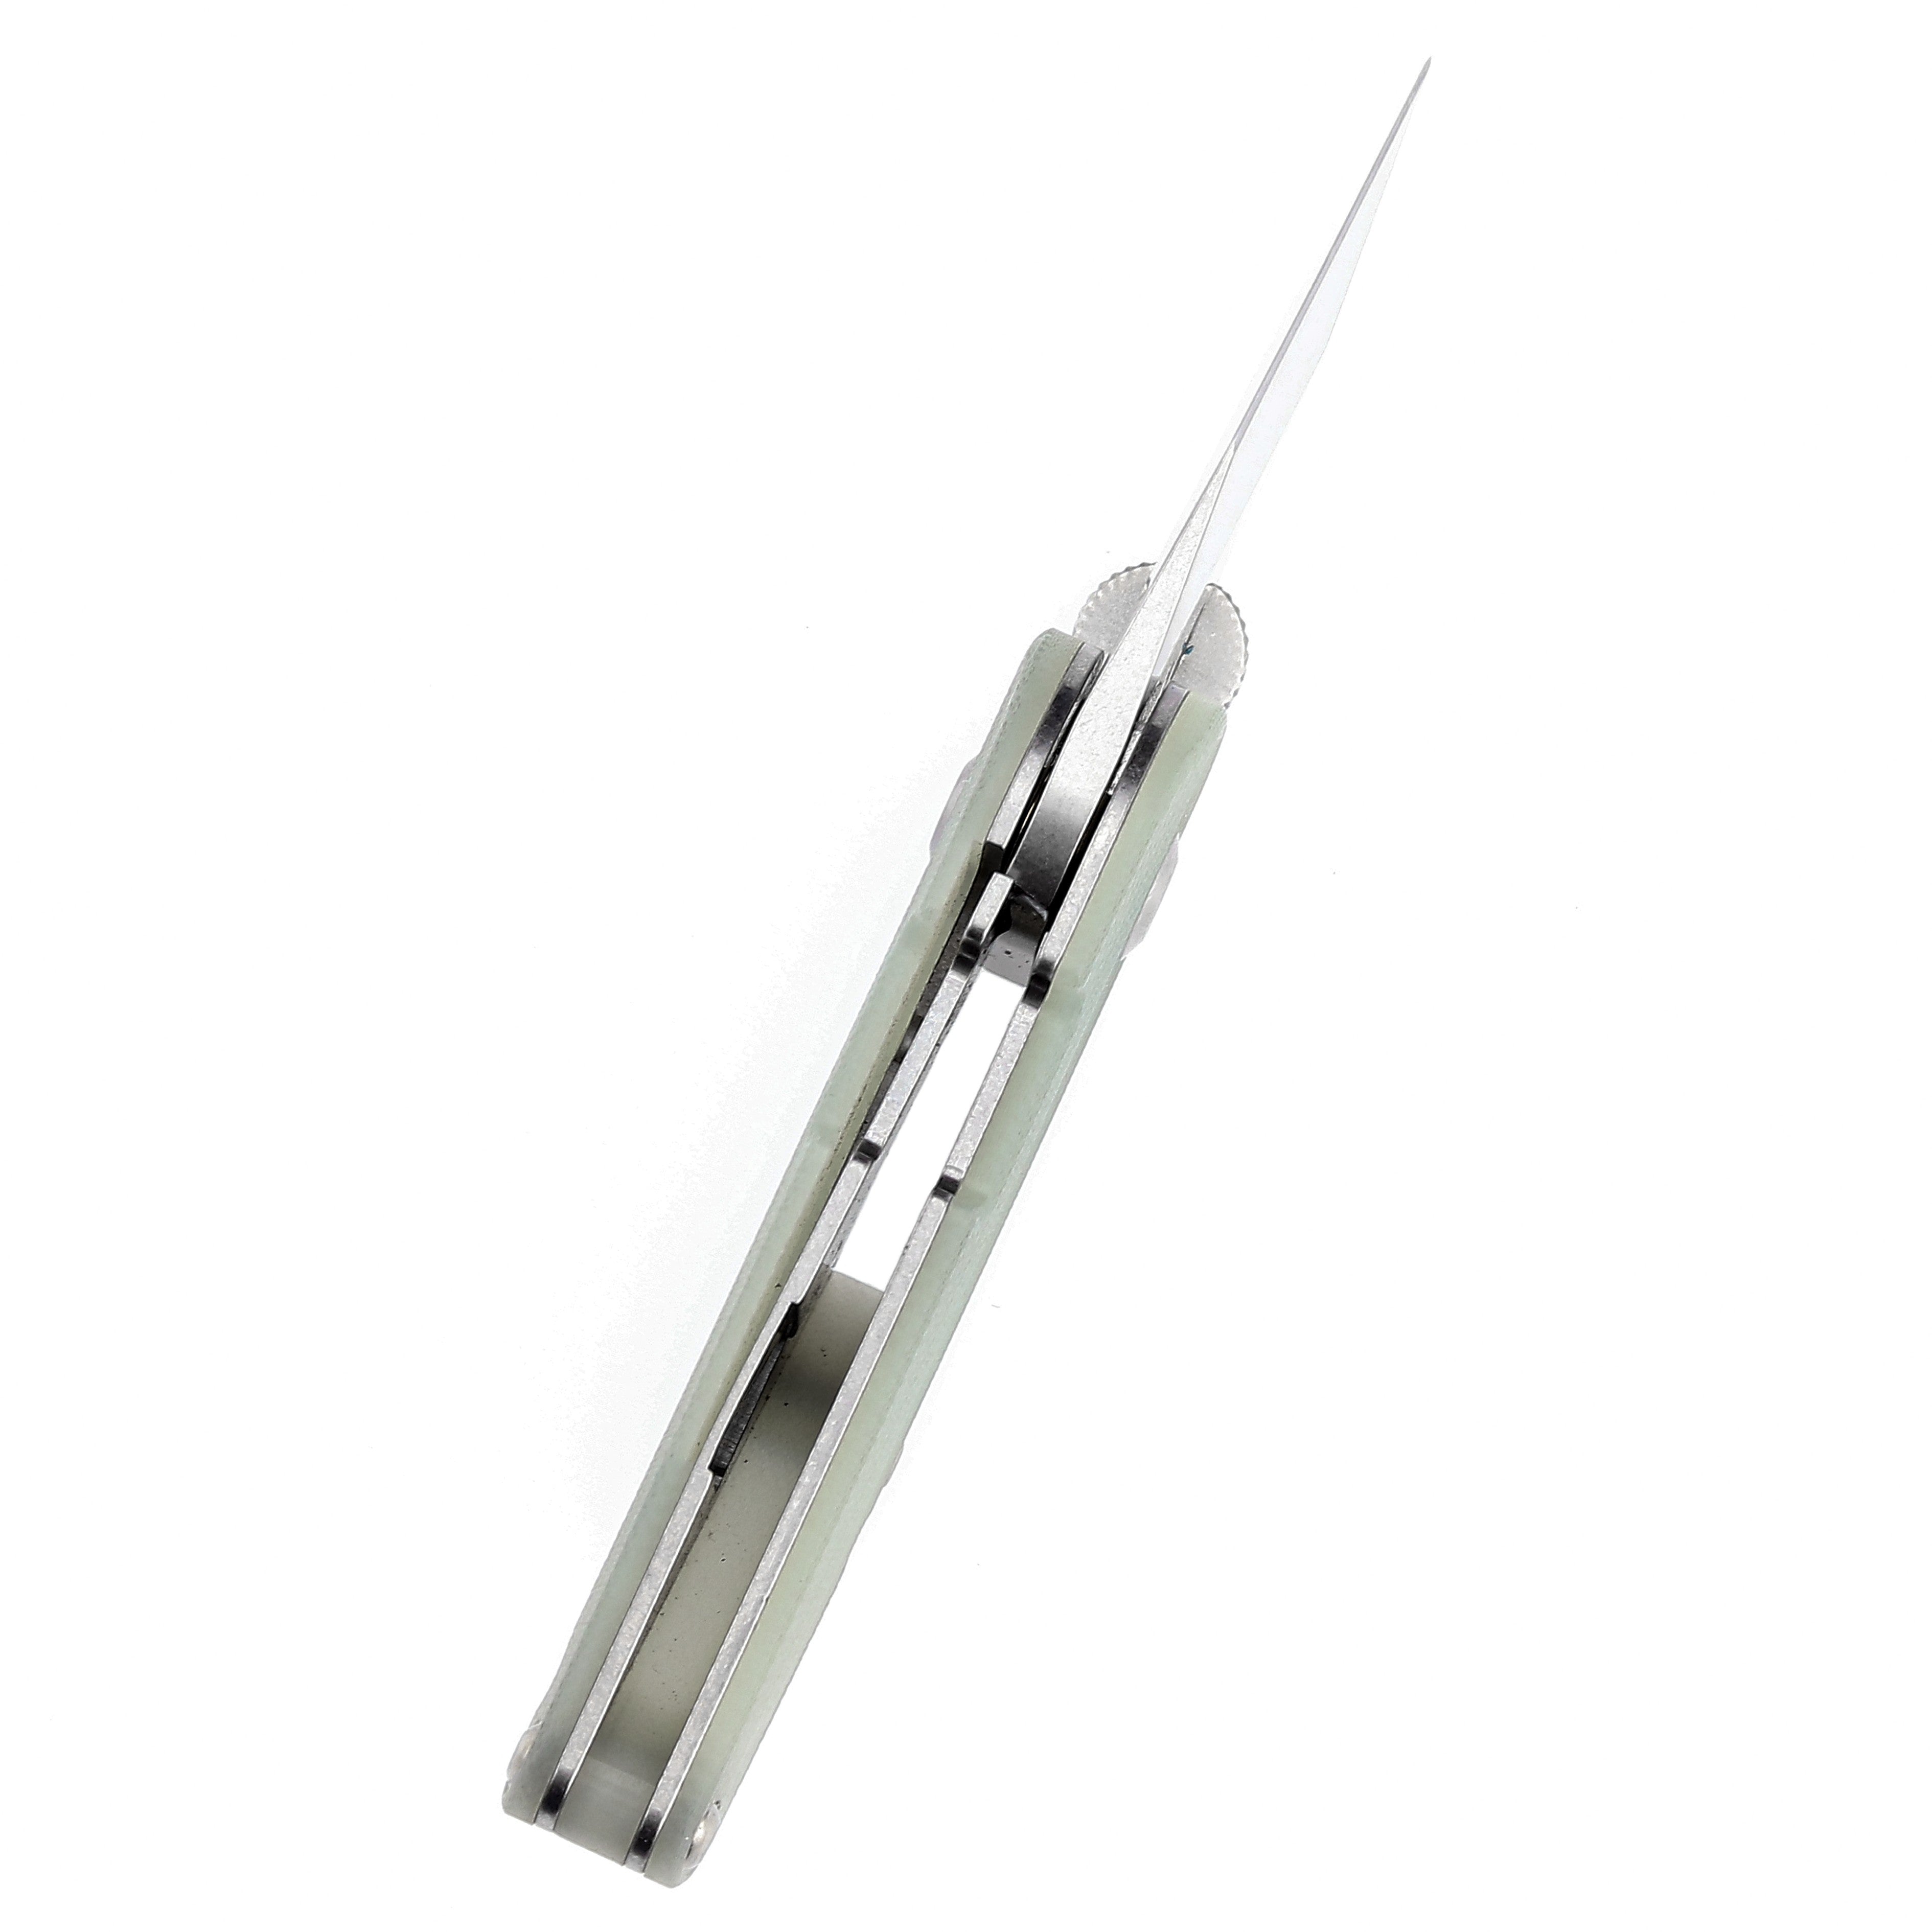 Kansept Knives Dash T3045A2 154CM Blade Jade G10 Liner Lock Edc Knives